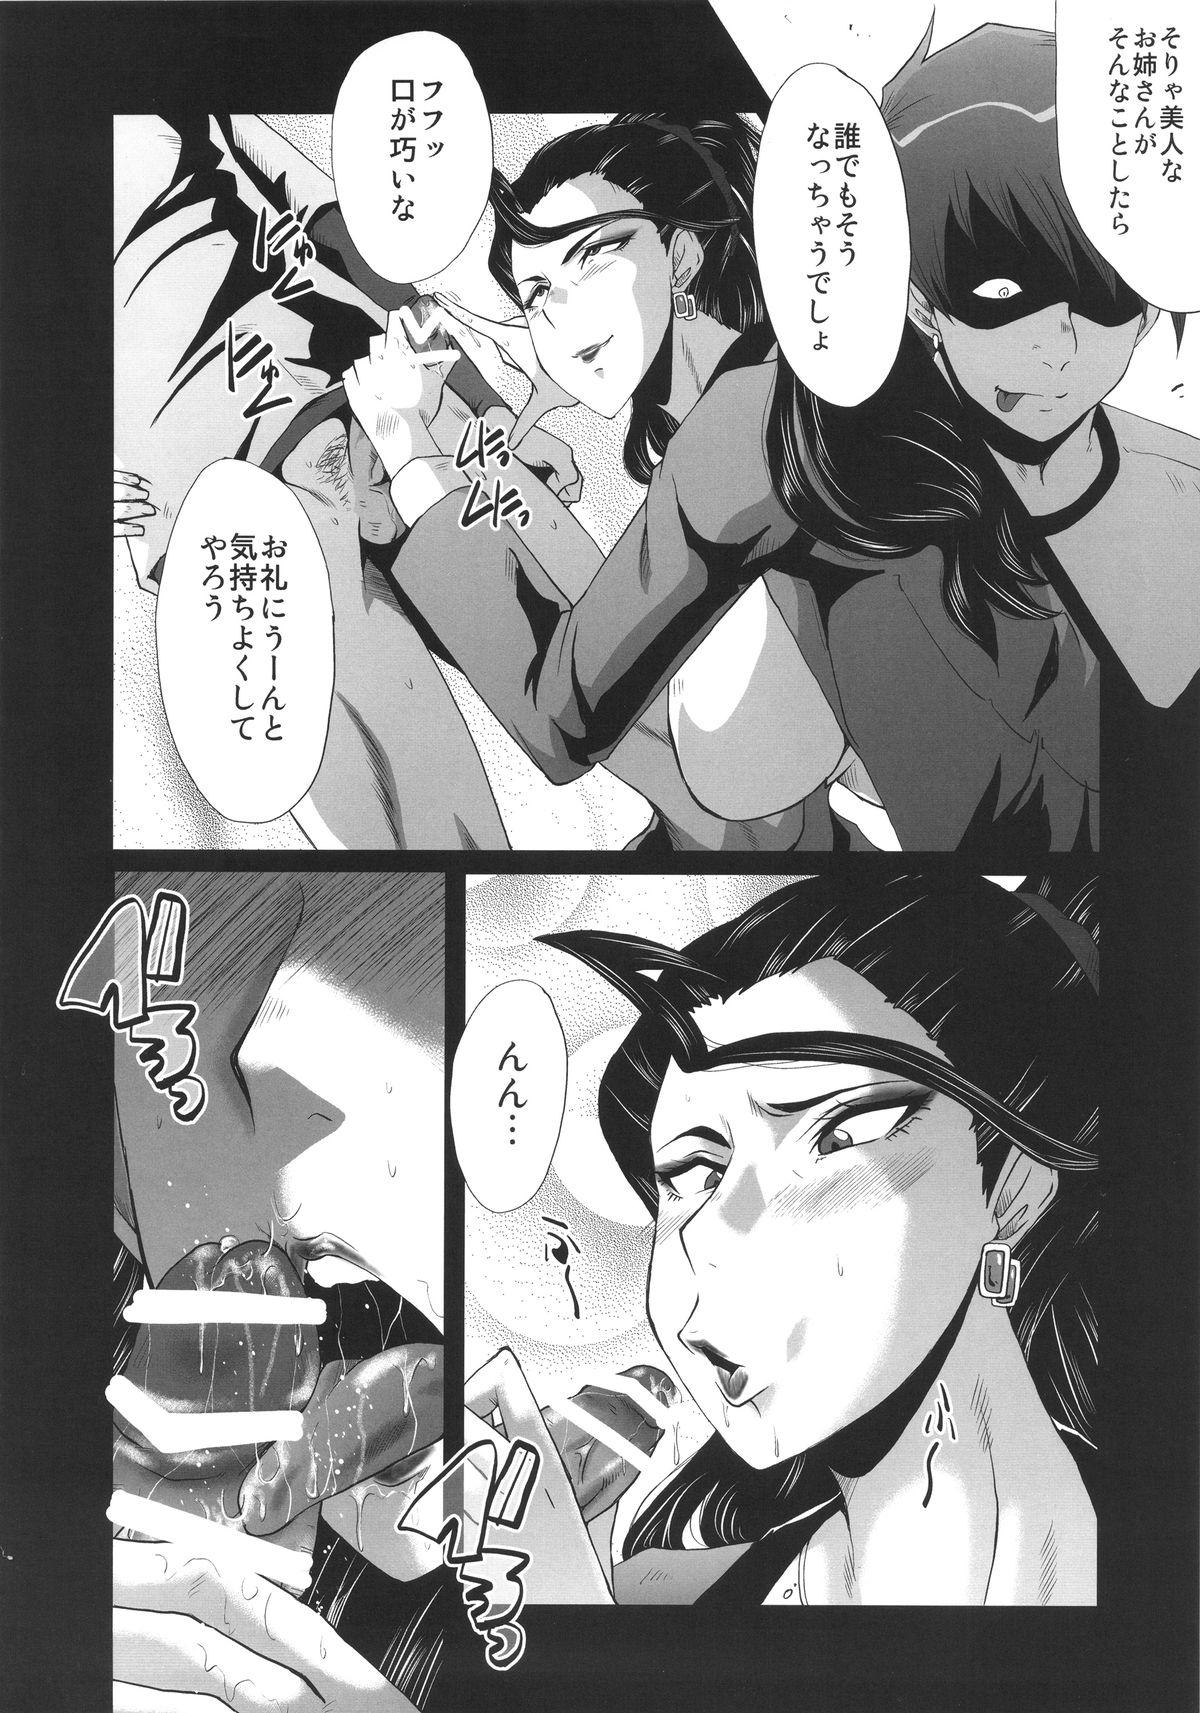 Stepsis Urabambi 52 Injuku no Kyouen - The idolmaster Amateur Sex - Page 8